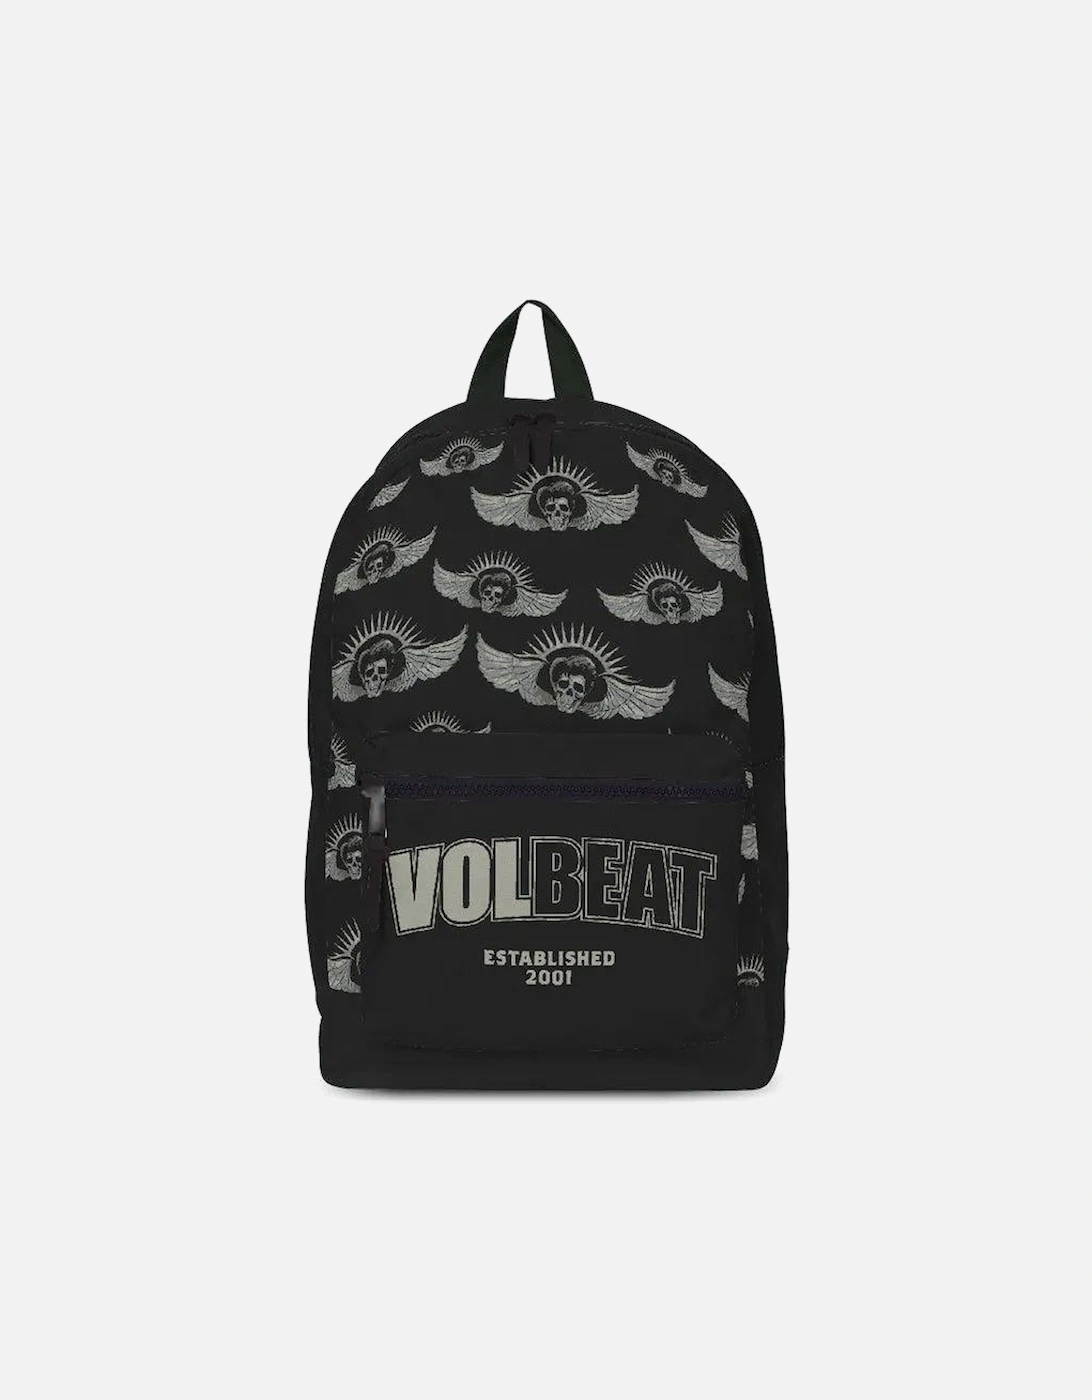 Established Volbeat Backpack, 2 of 1